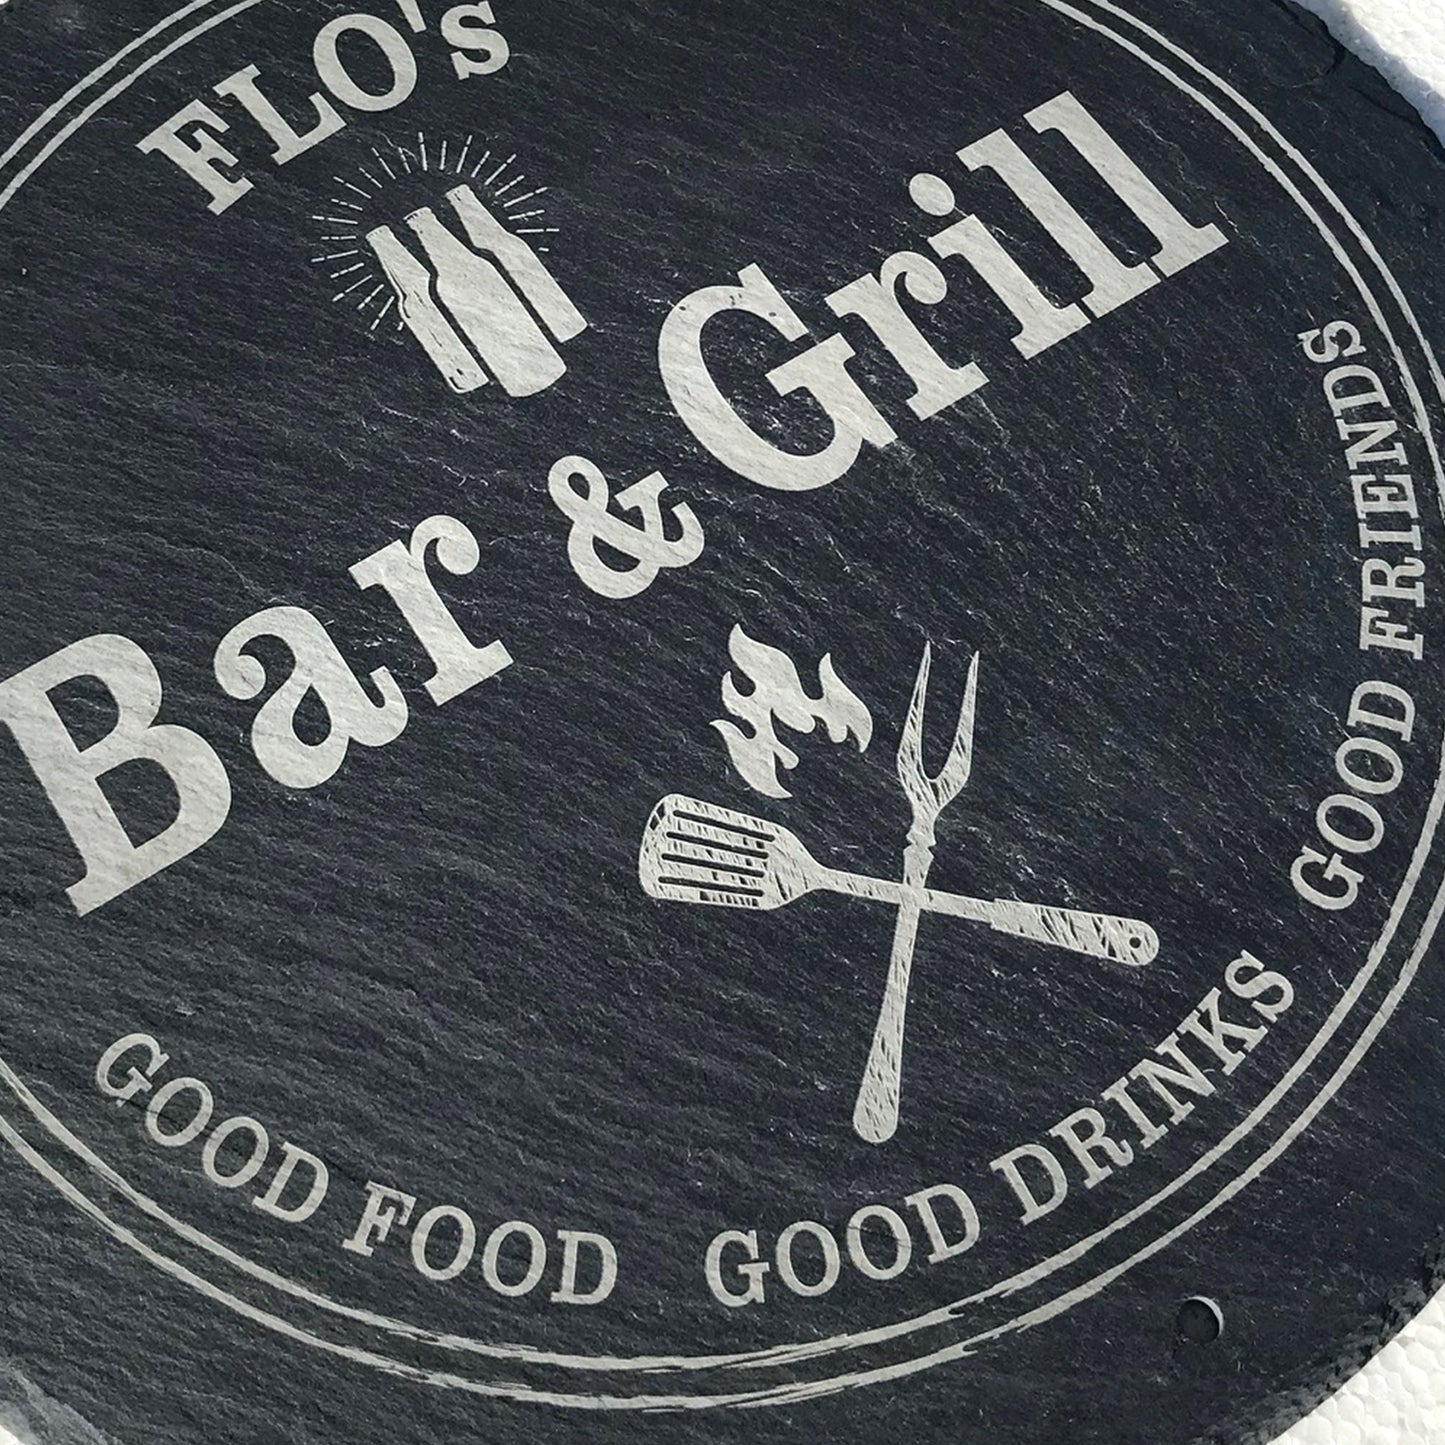 BAR & GRILL - personalisiertes Schieferschild rund für die BBQ-Ecke